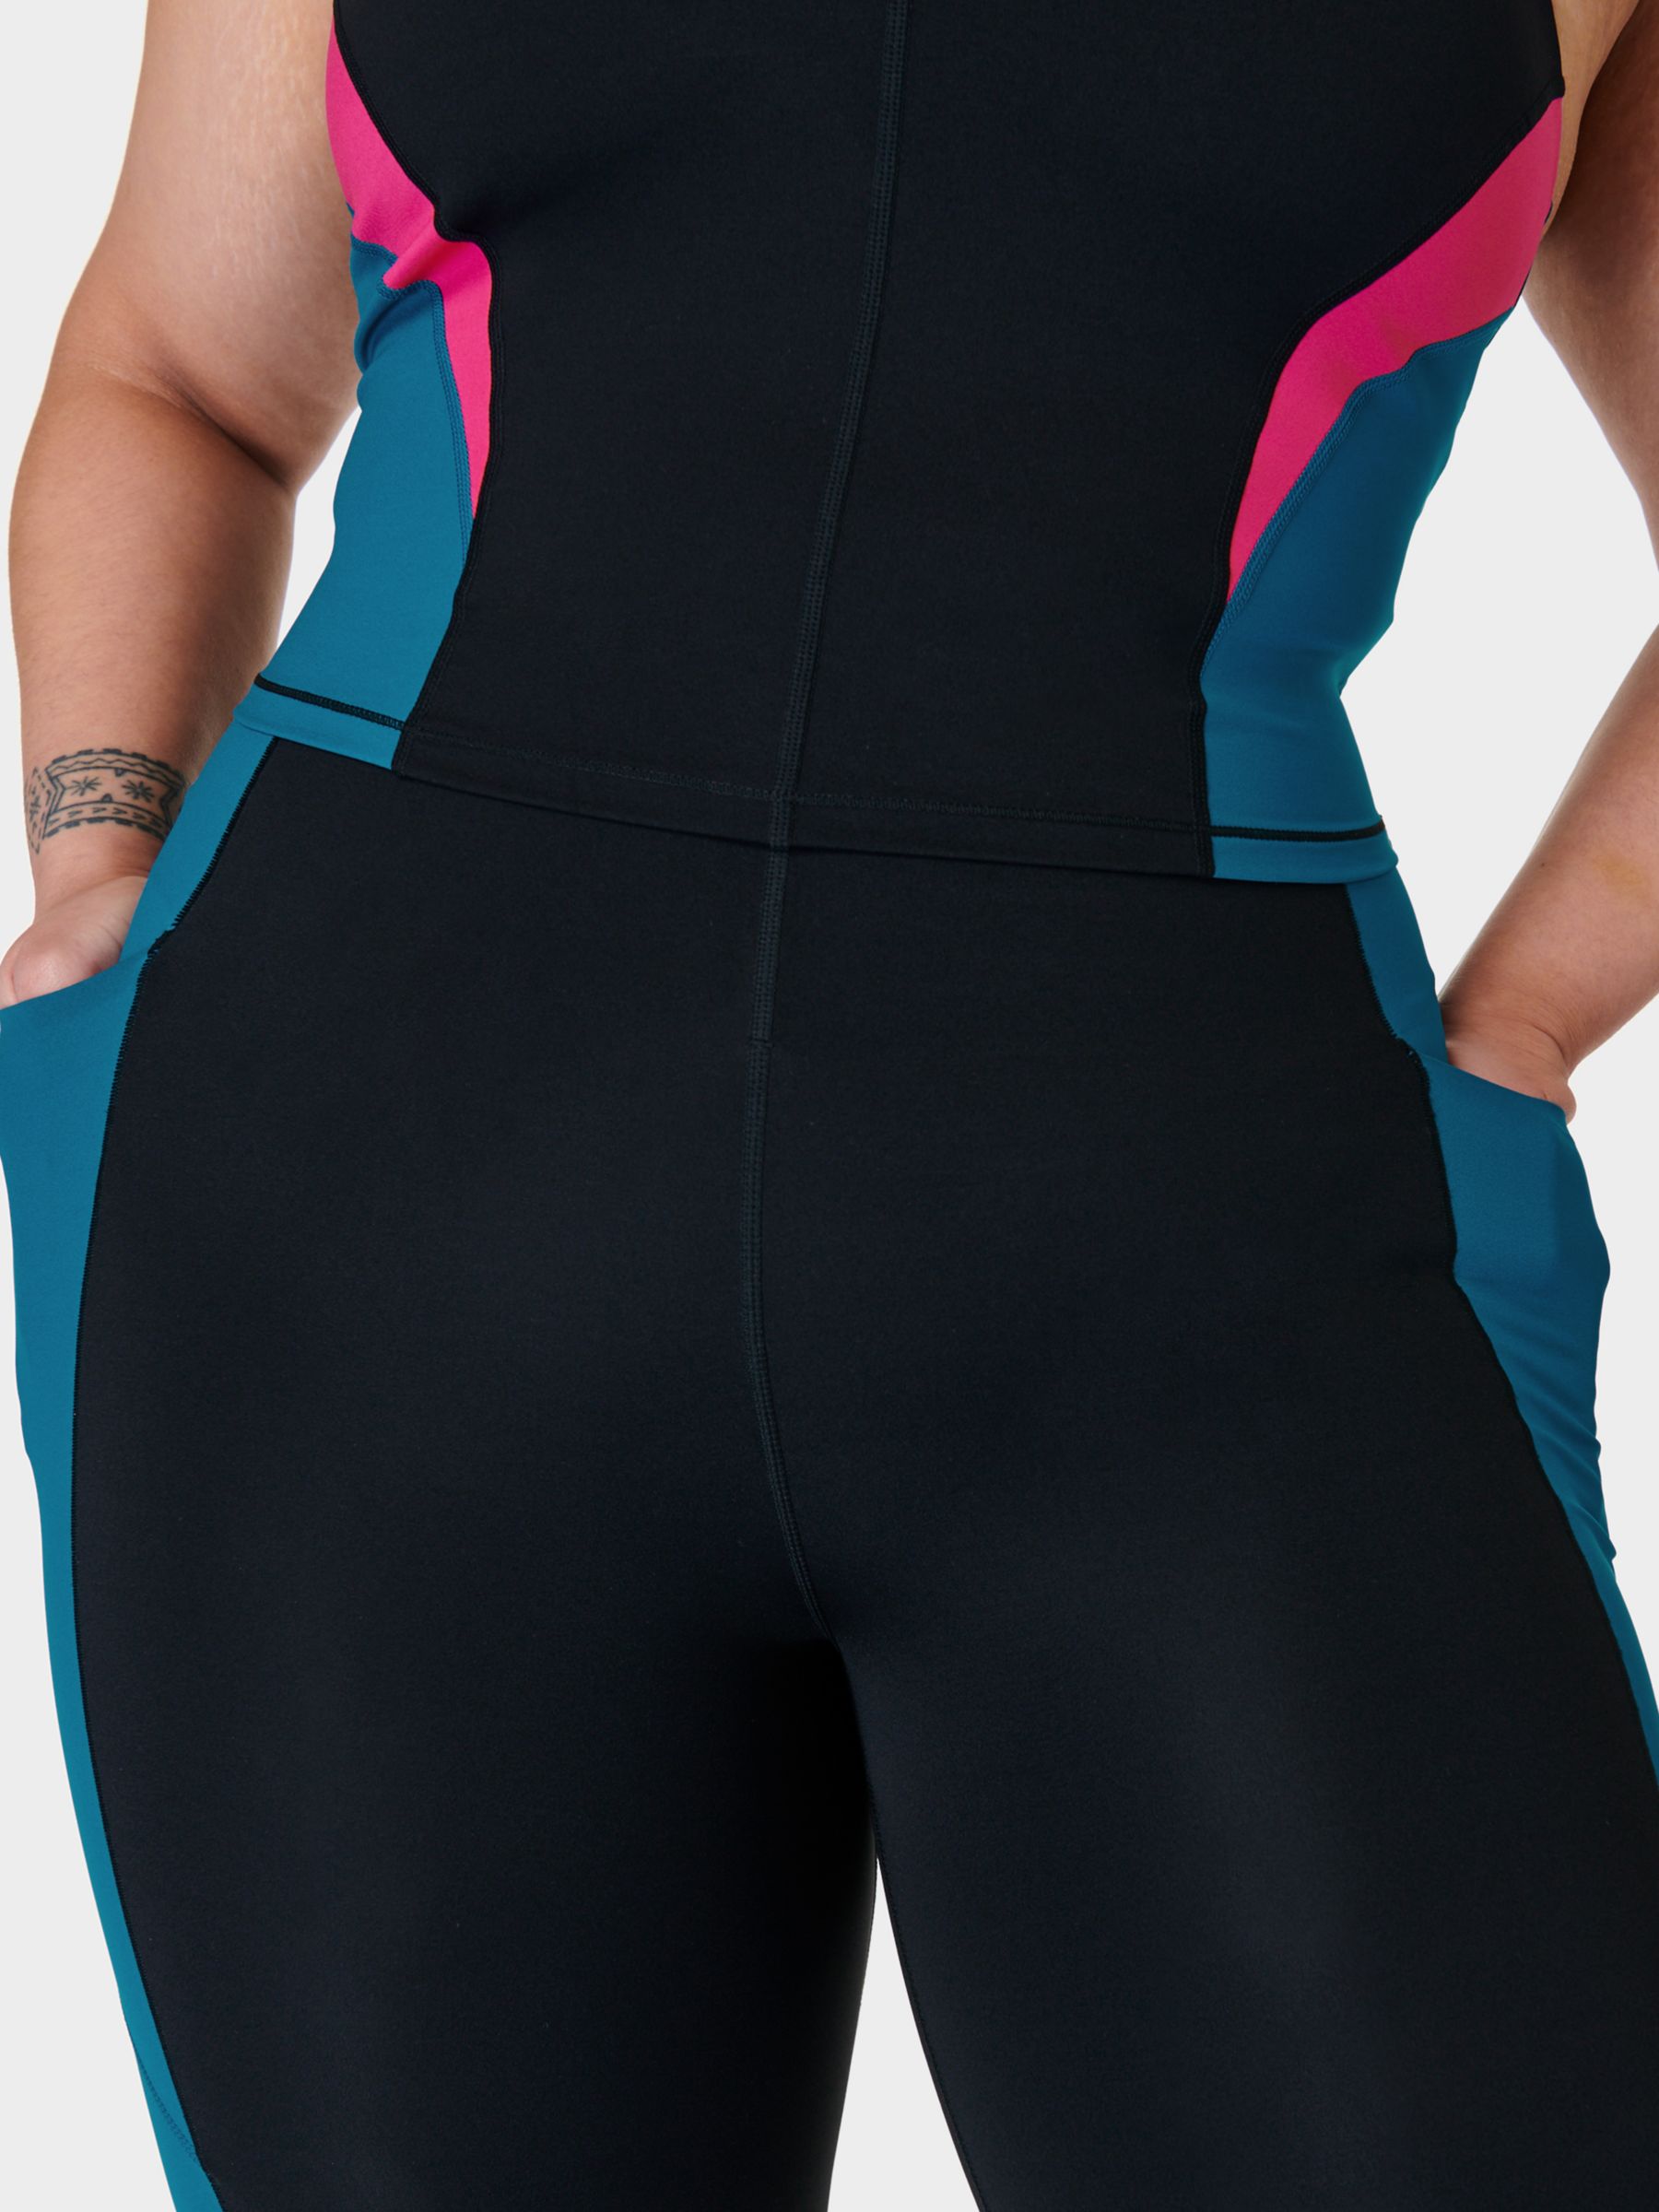 Sweaty Betty Power UltraSculpt High Waist 7/8 Workout Leggings, Black/Pink Reefteal, XXS